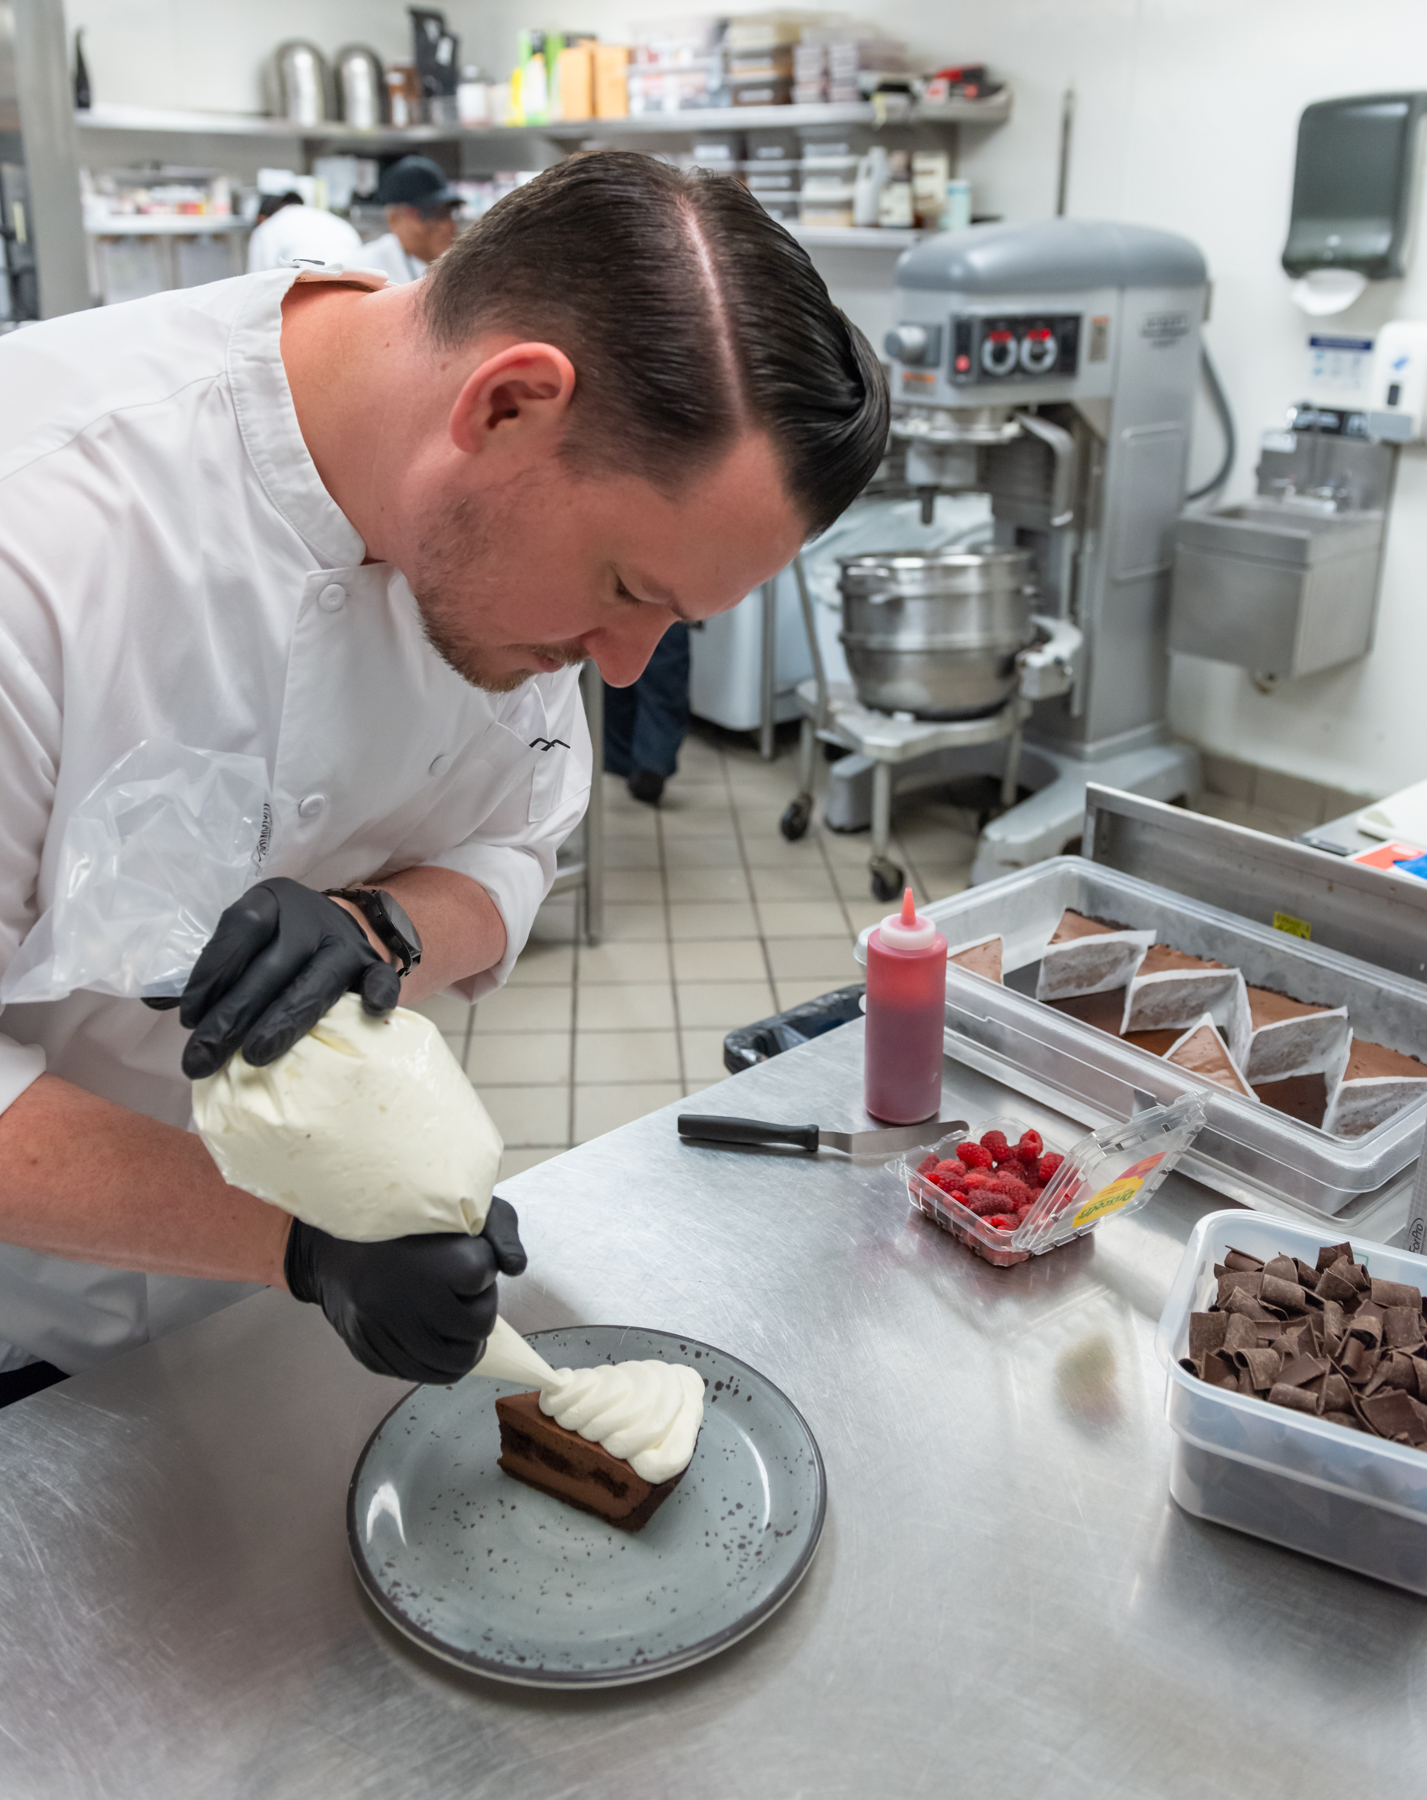 Celebrating World Baking Day with Executive Pastry Chef Thomas Gorczyca